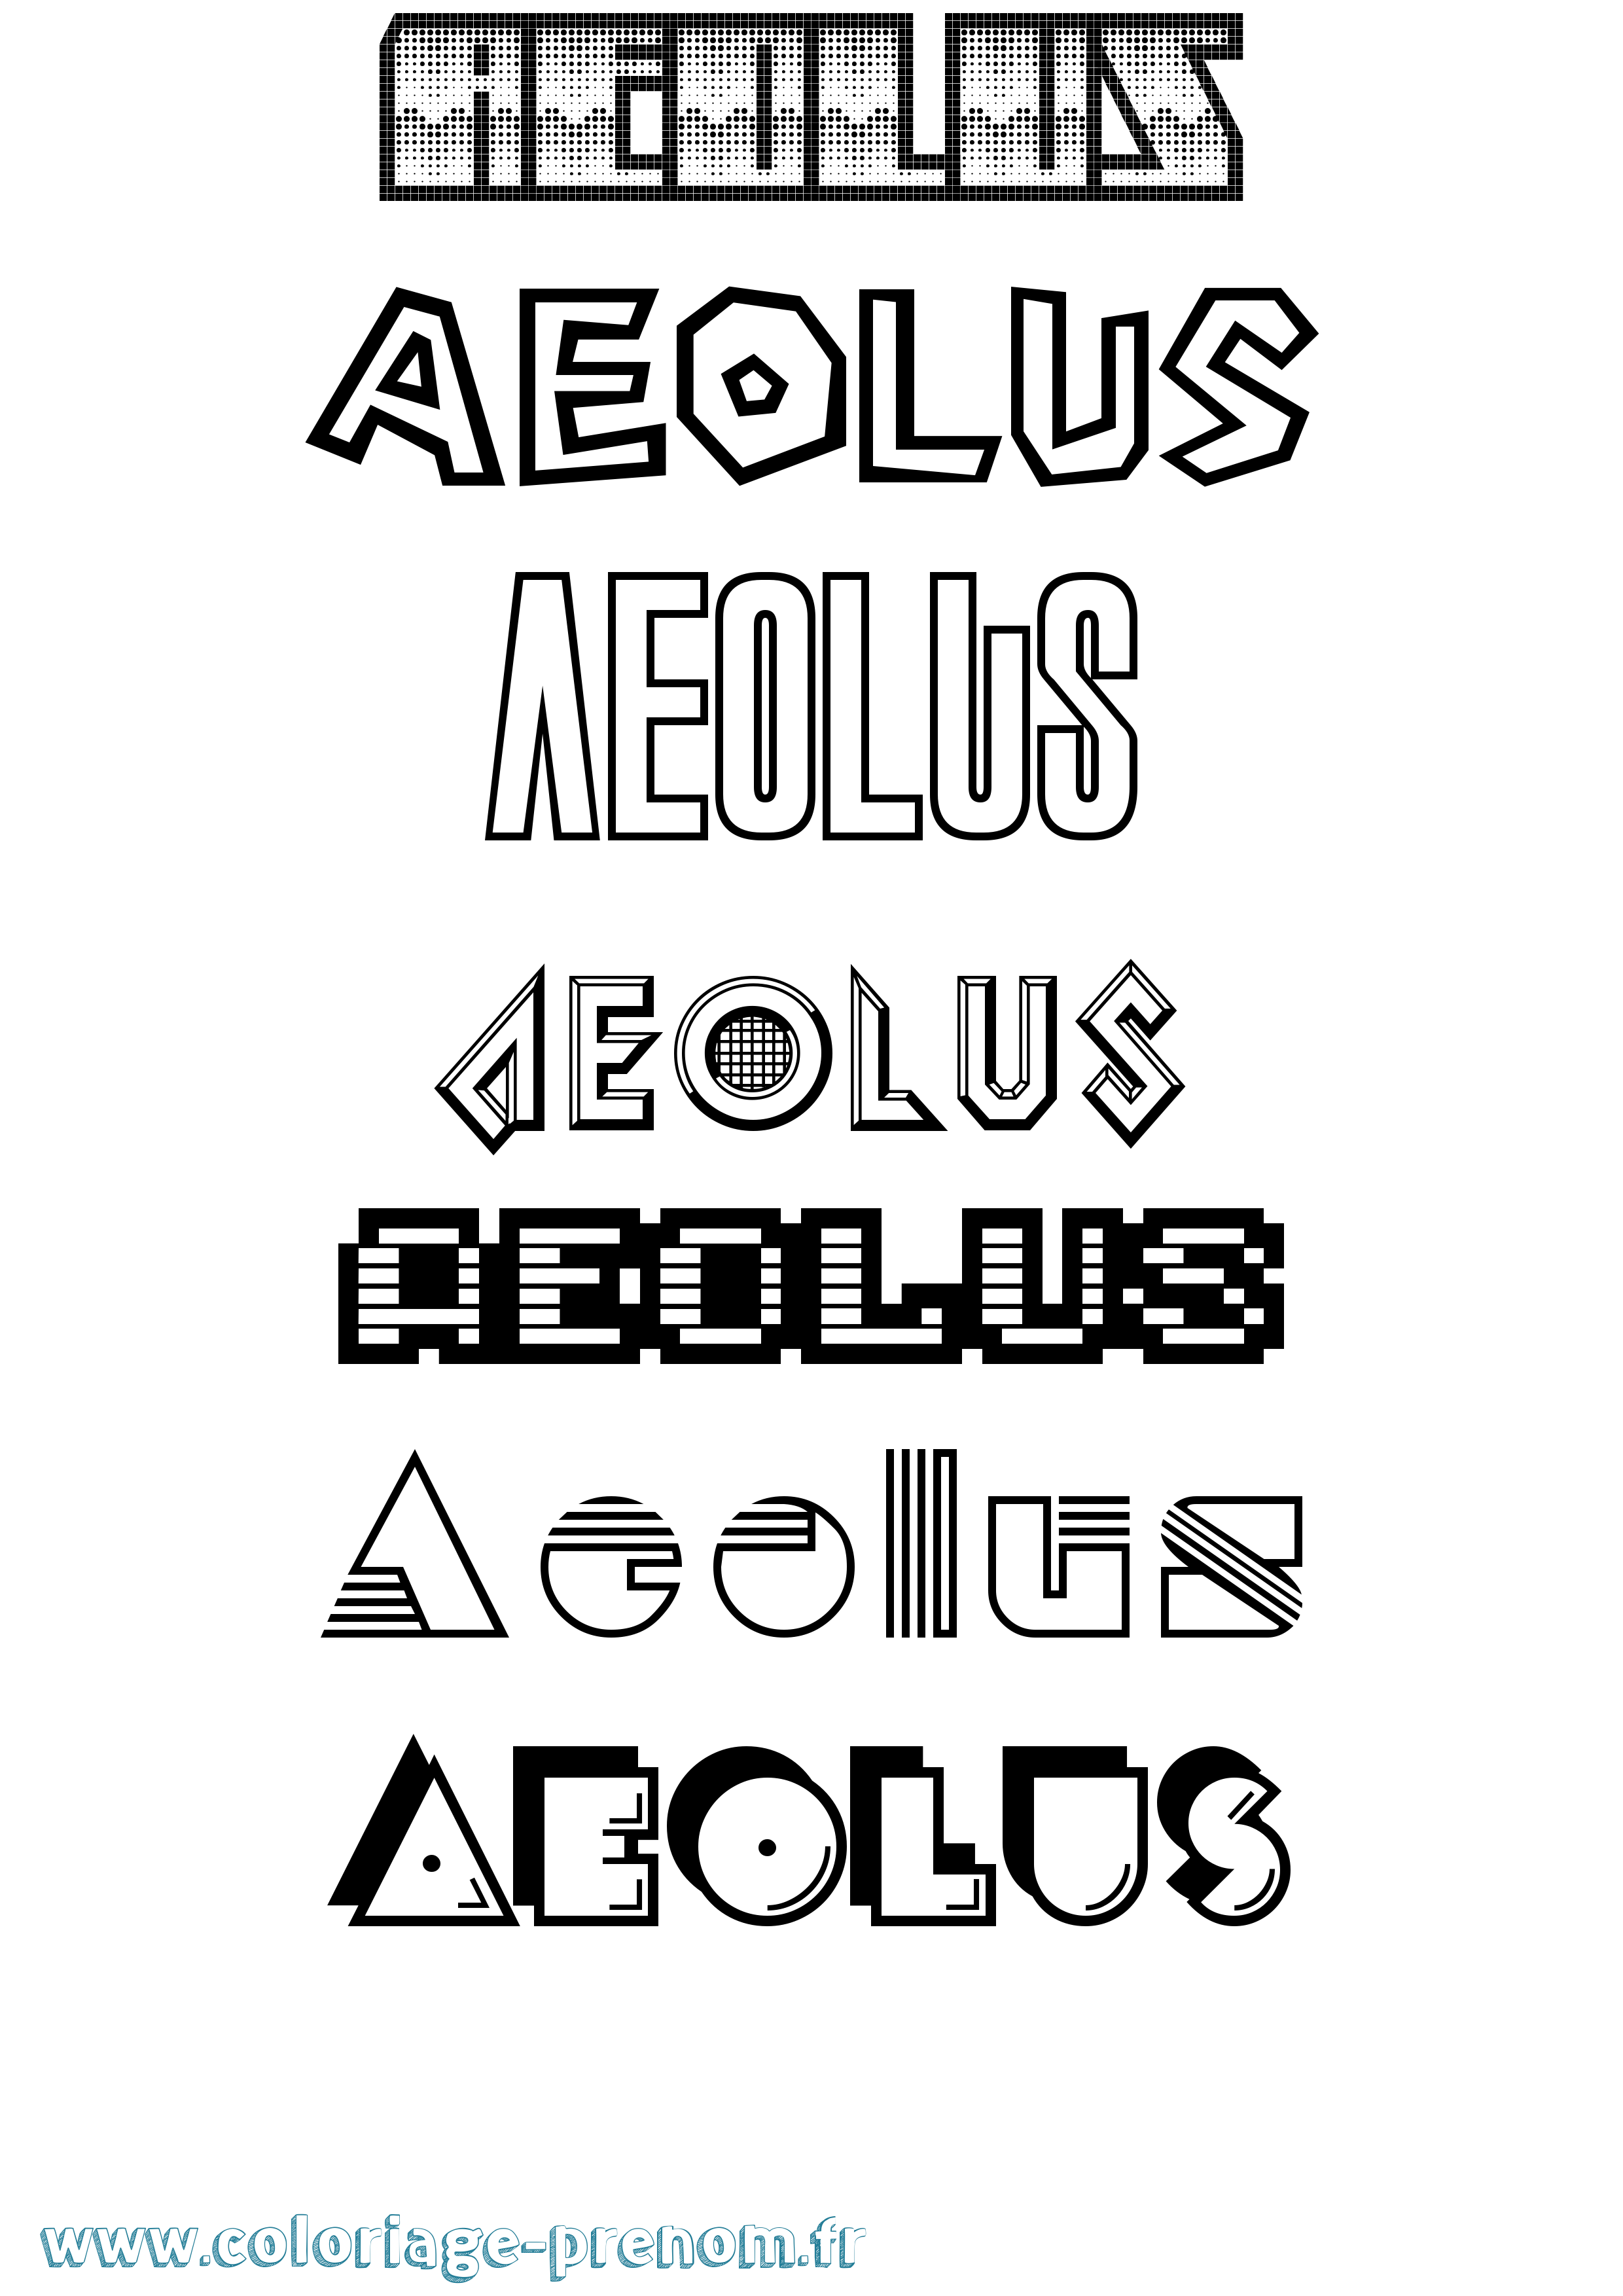 Coloriage prénom Aeolus Jeux Vidéos